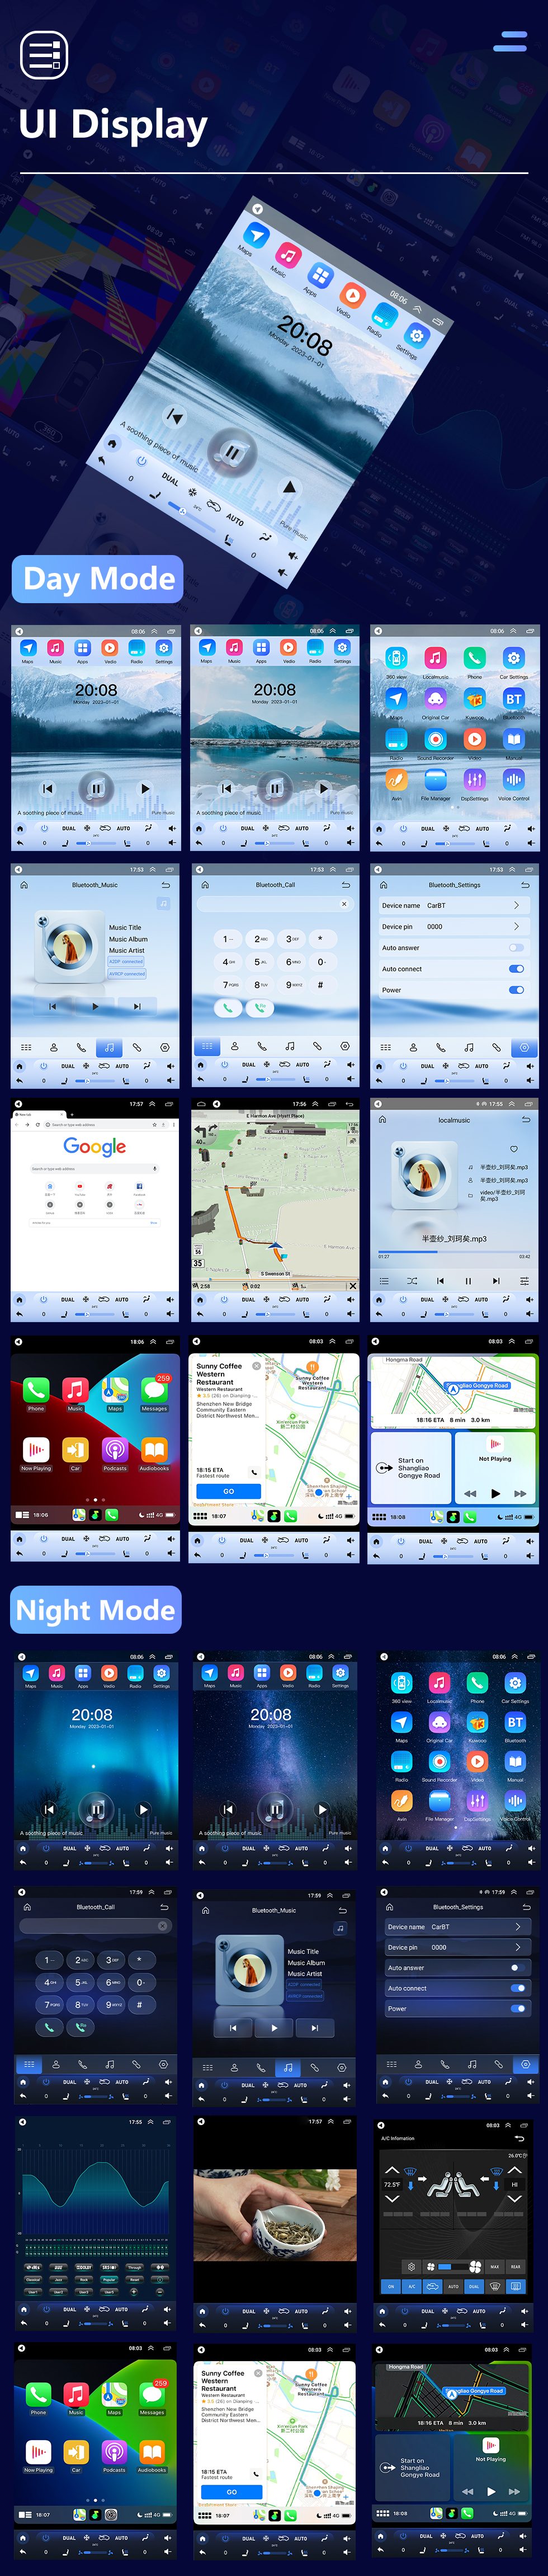 Seicane OEM 12,1-дюймовый Android 10.0 для 2008-2015 TOYOTA LAND CRUISER Радио GPS-навигационная система с поддержкой Bluetooth Carplay OBD2 DVR TPMS